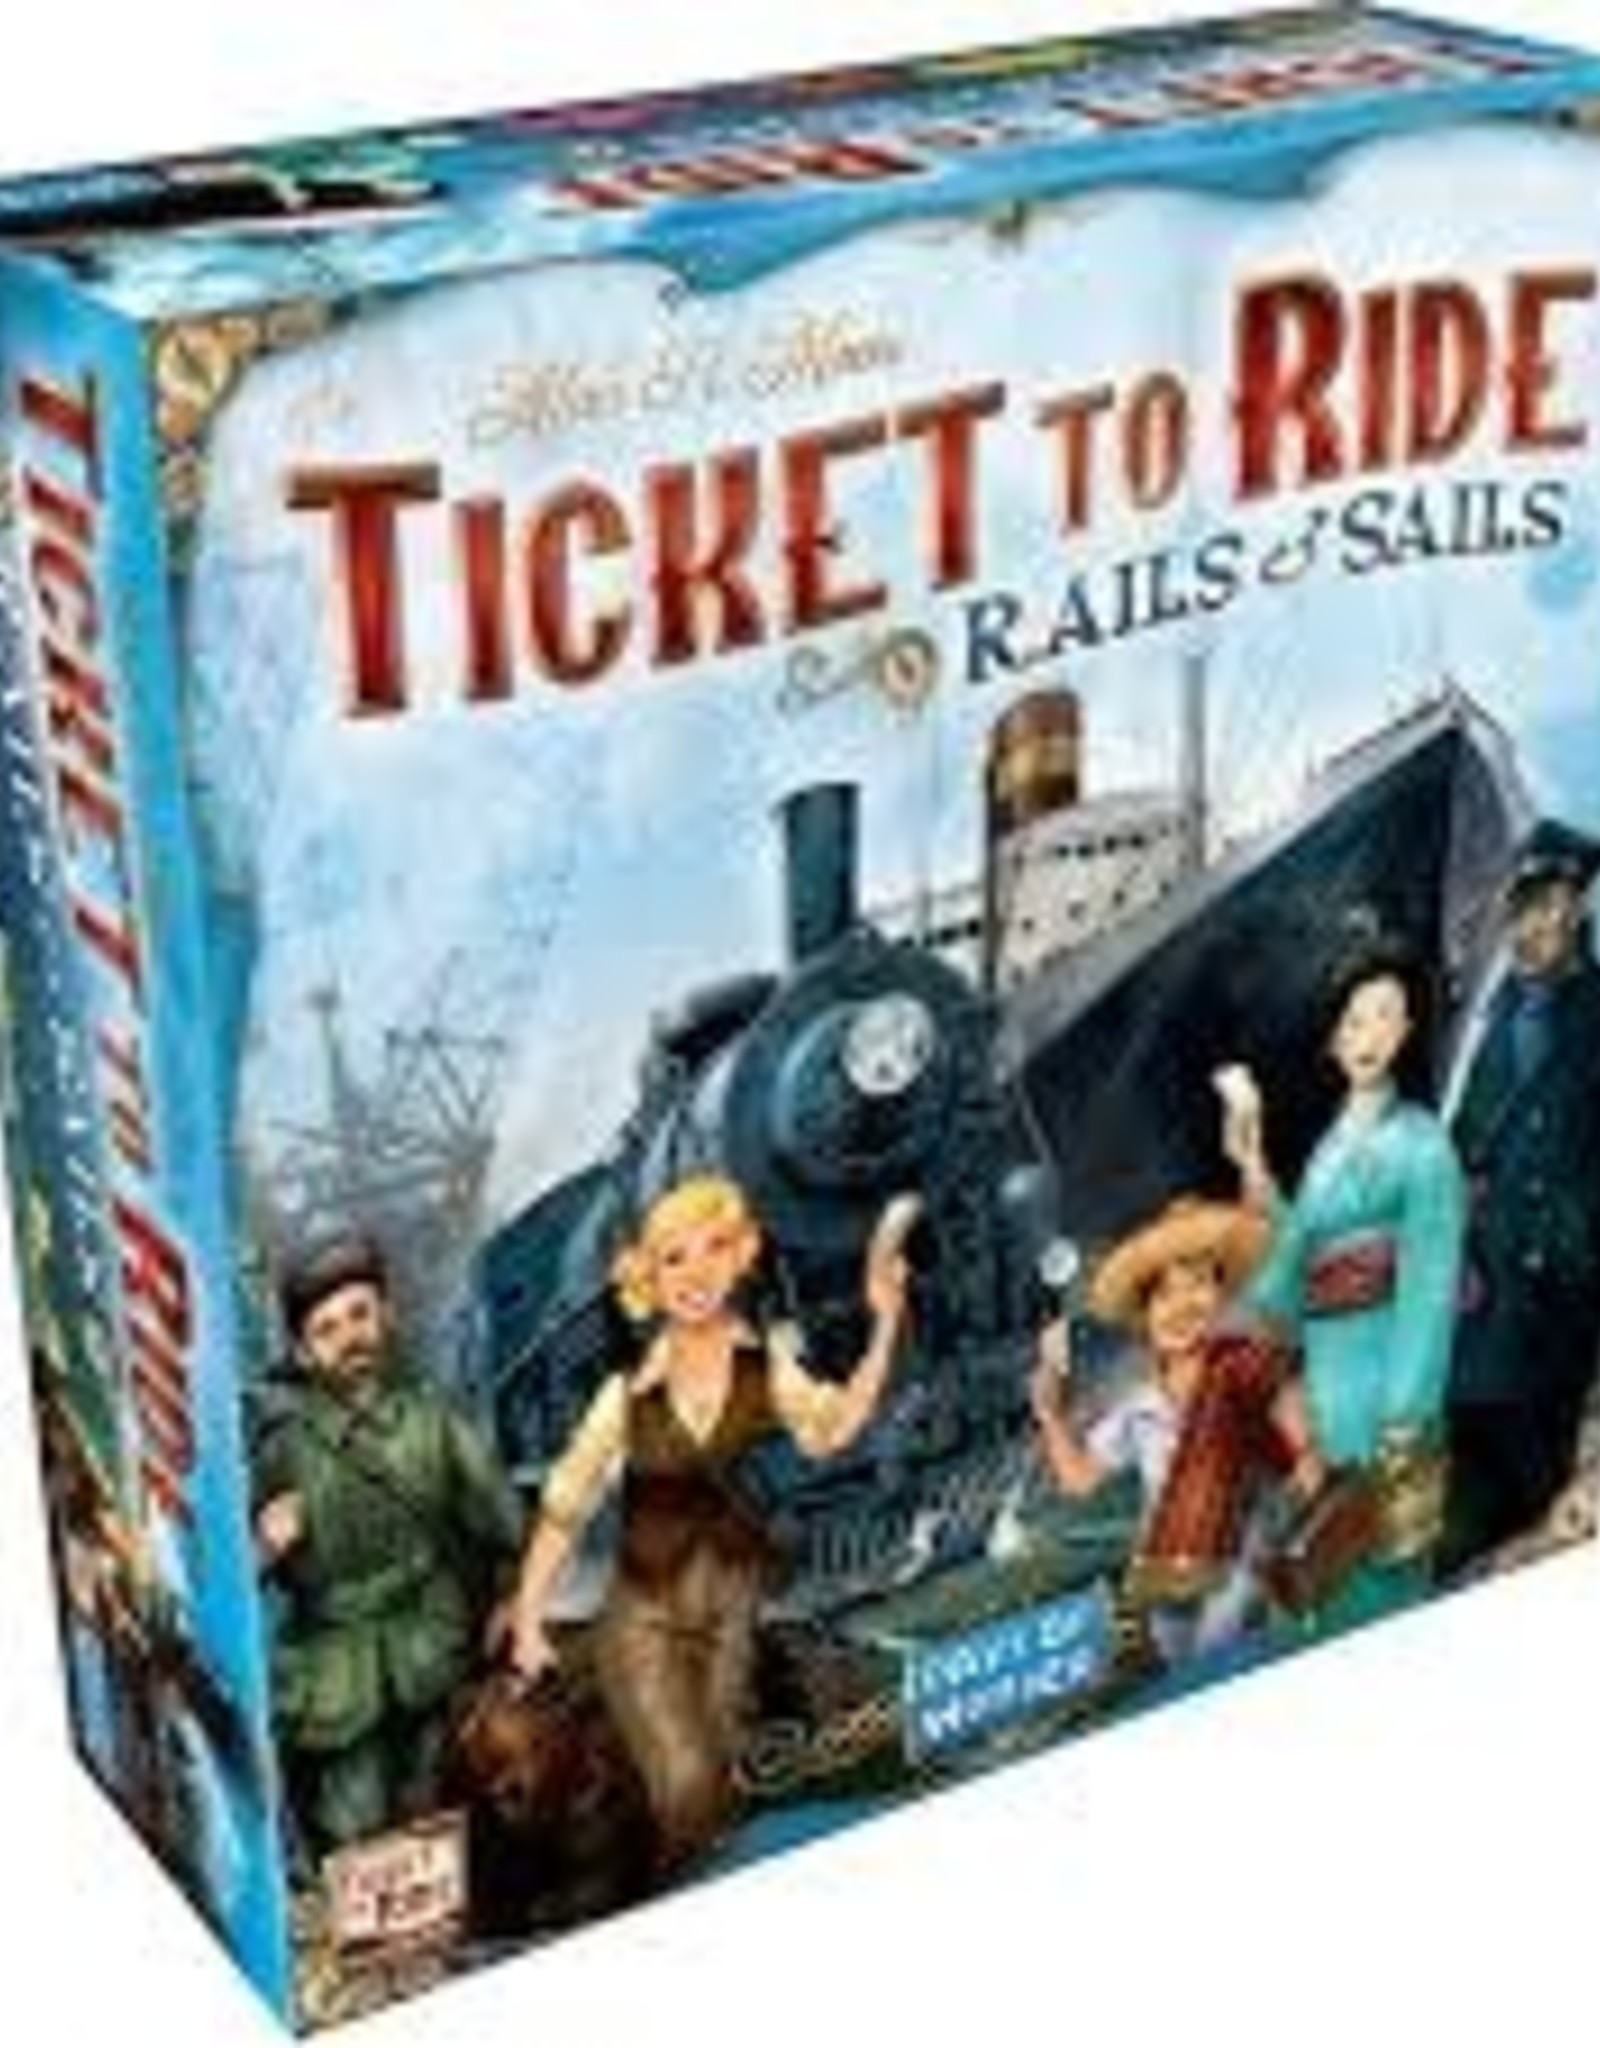 Days of Wonder Ticket to Ride - Rails & Sails